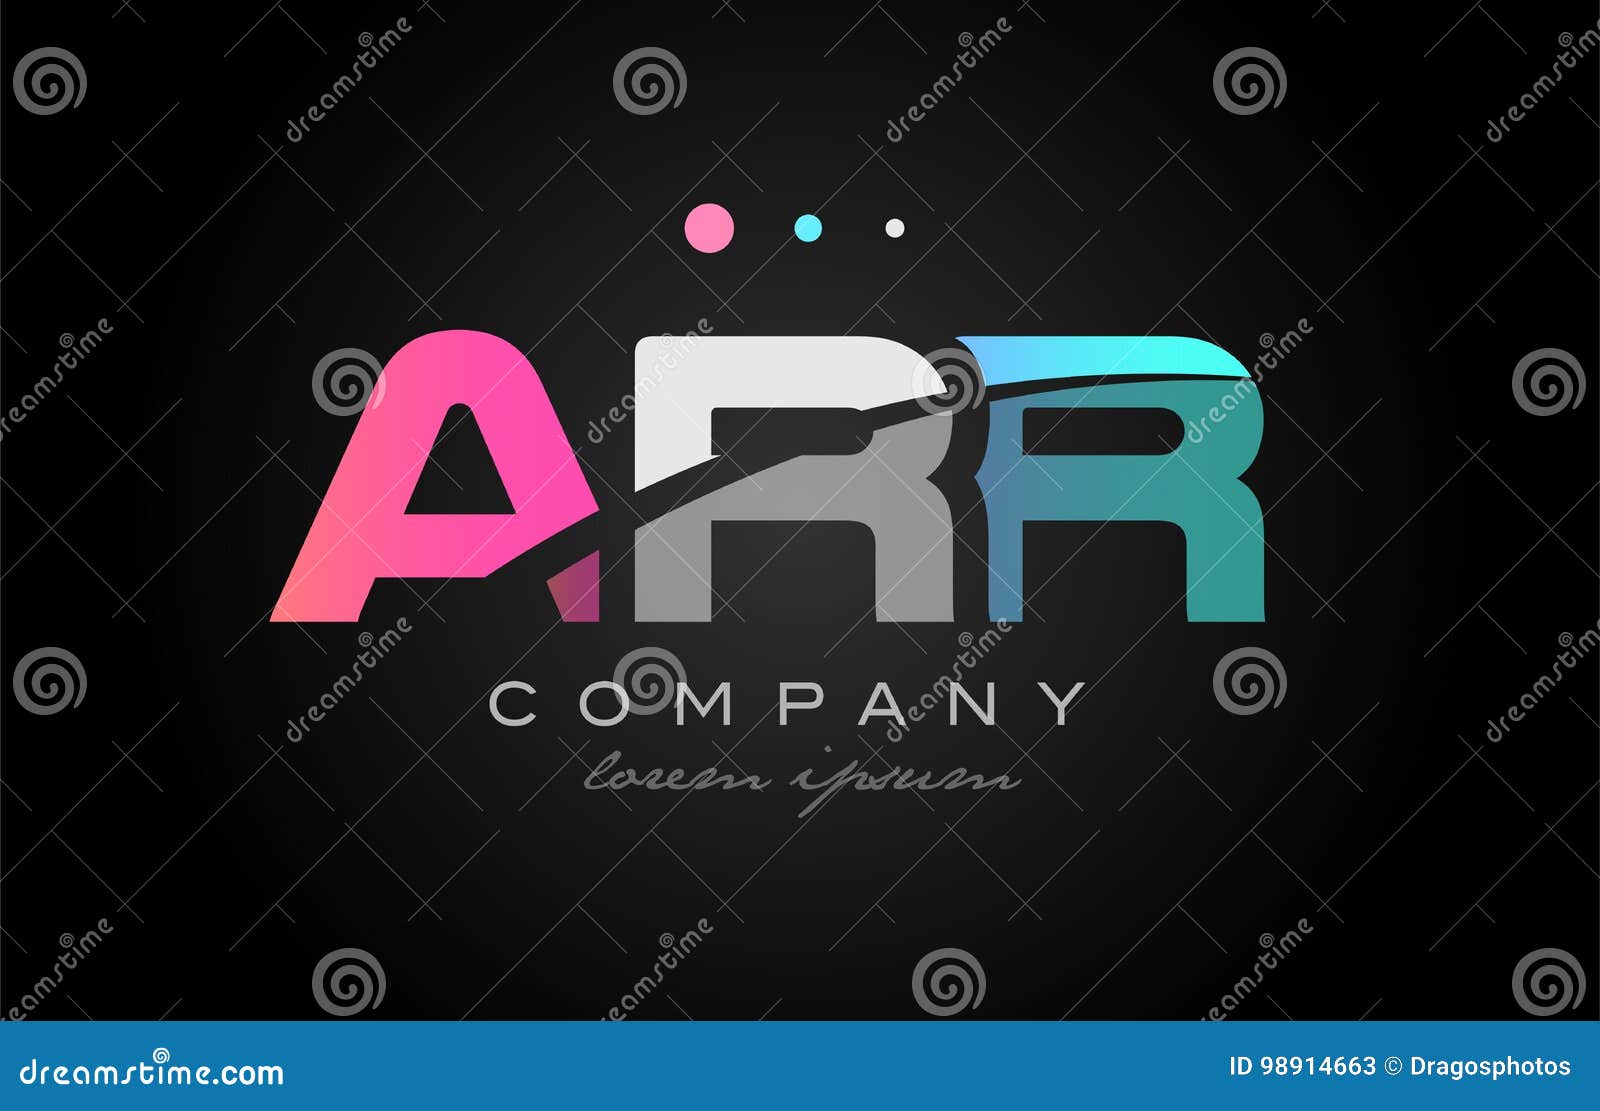 arr a r r three letter logo icon 